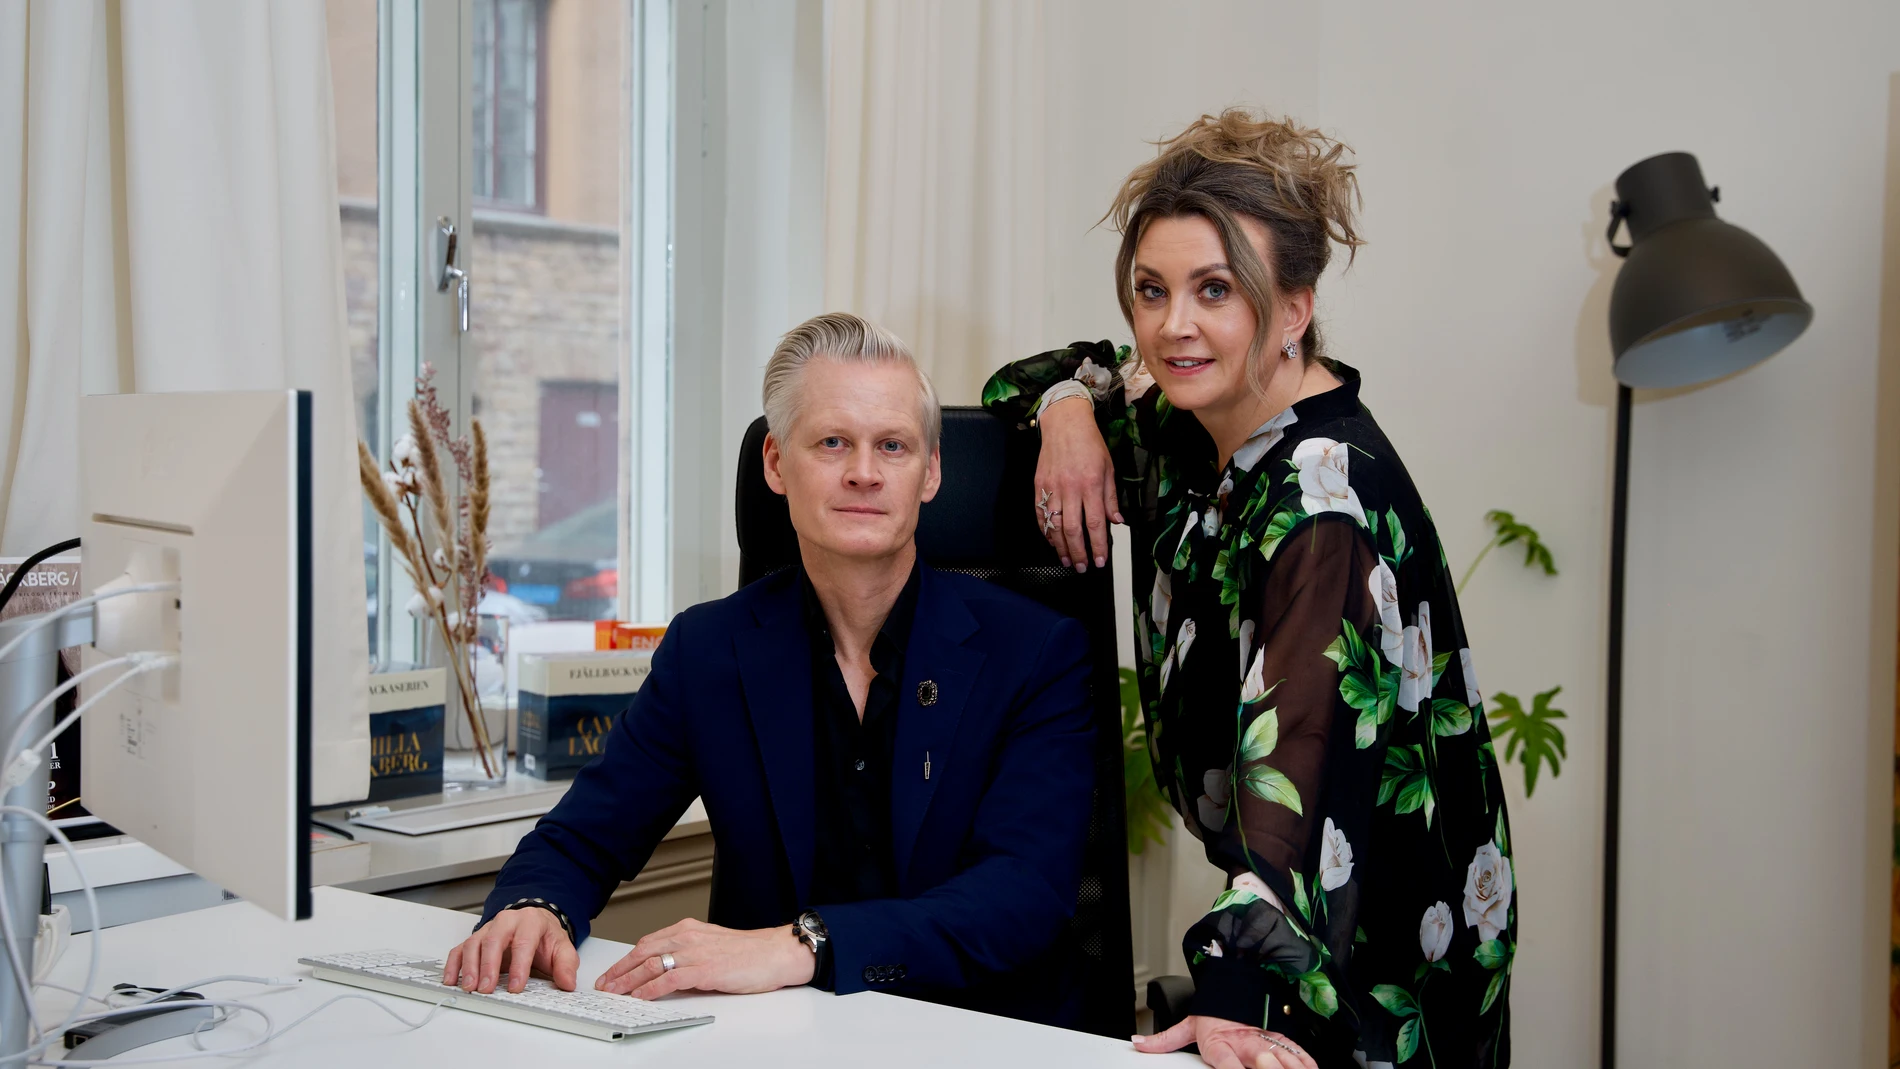 Henrik Fexeus y Camila Läckberg en su agencia literaria de Estocolmo